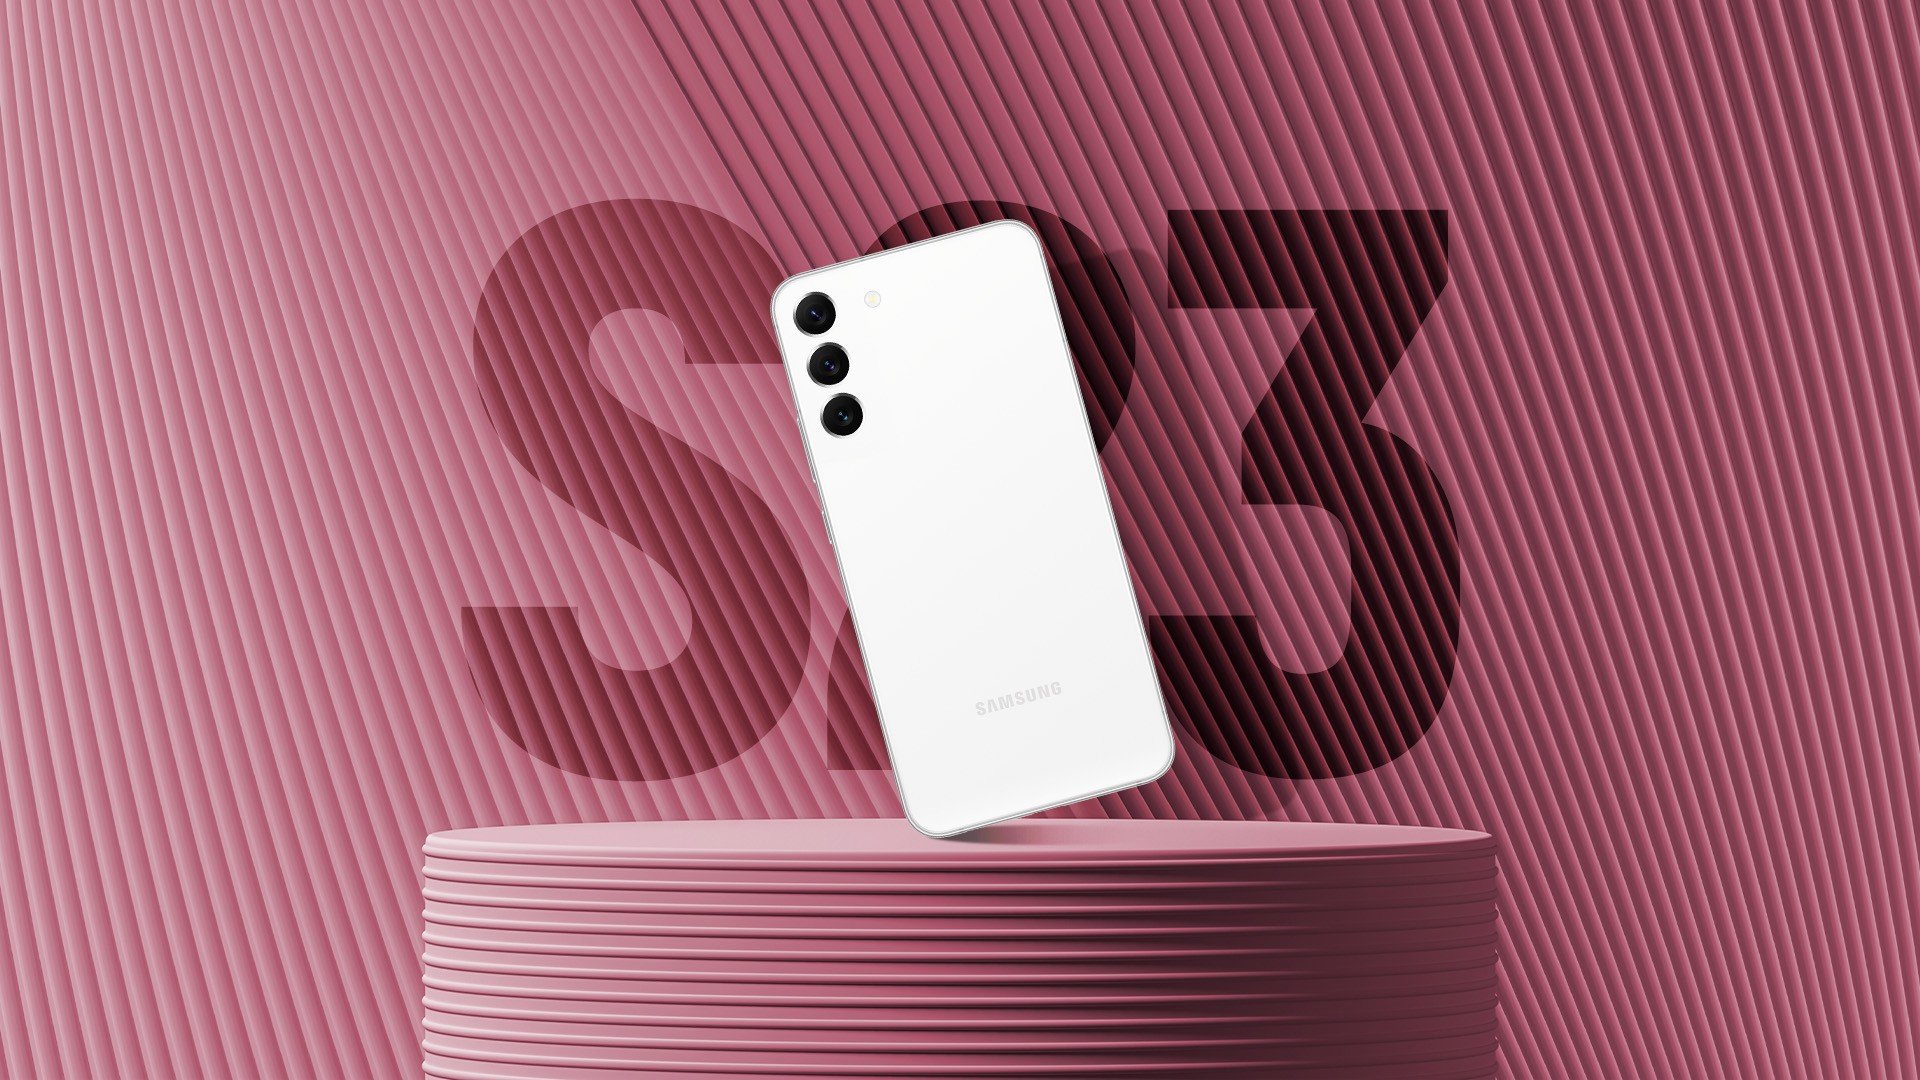 Galaxy S23 supera vendas dos antecessores em 23% com sucesso do S23 Ultra,  indica pesquisa 